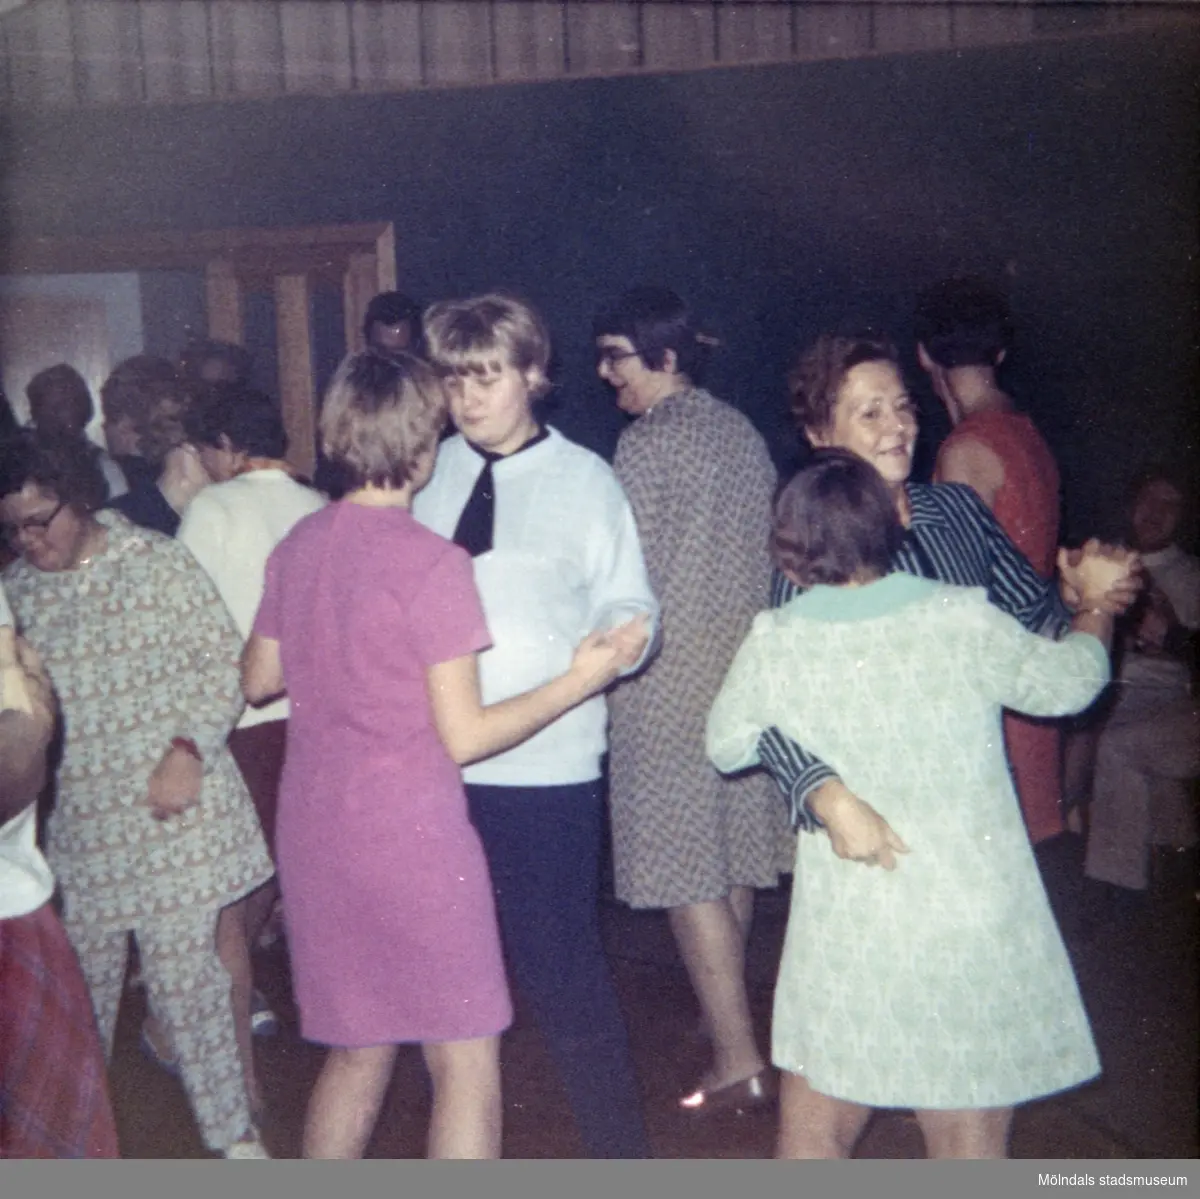 Elever, vid Skolhemmet Stretered, som dansar pardans. 1970-tal.